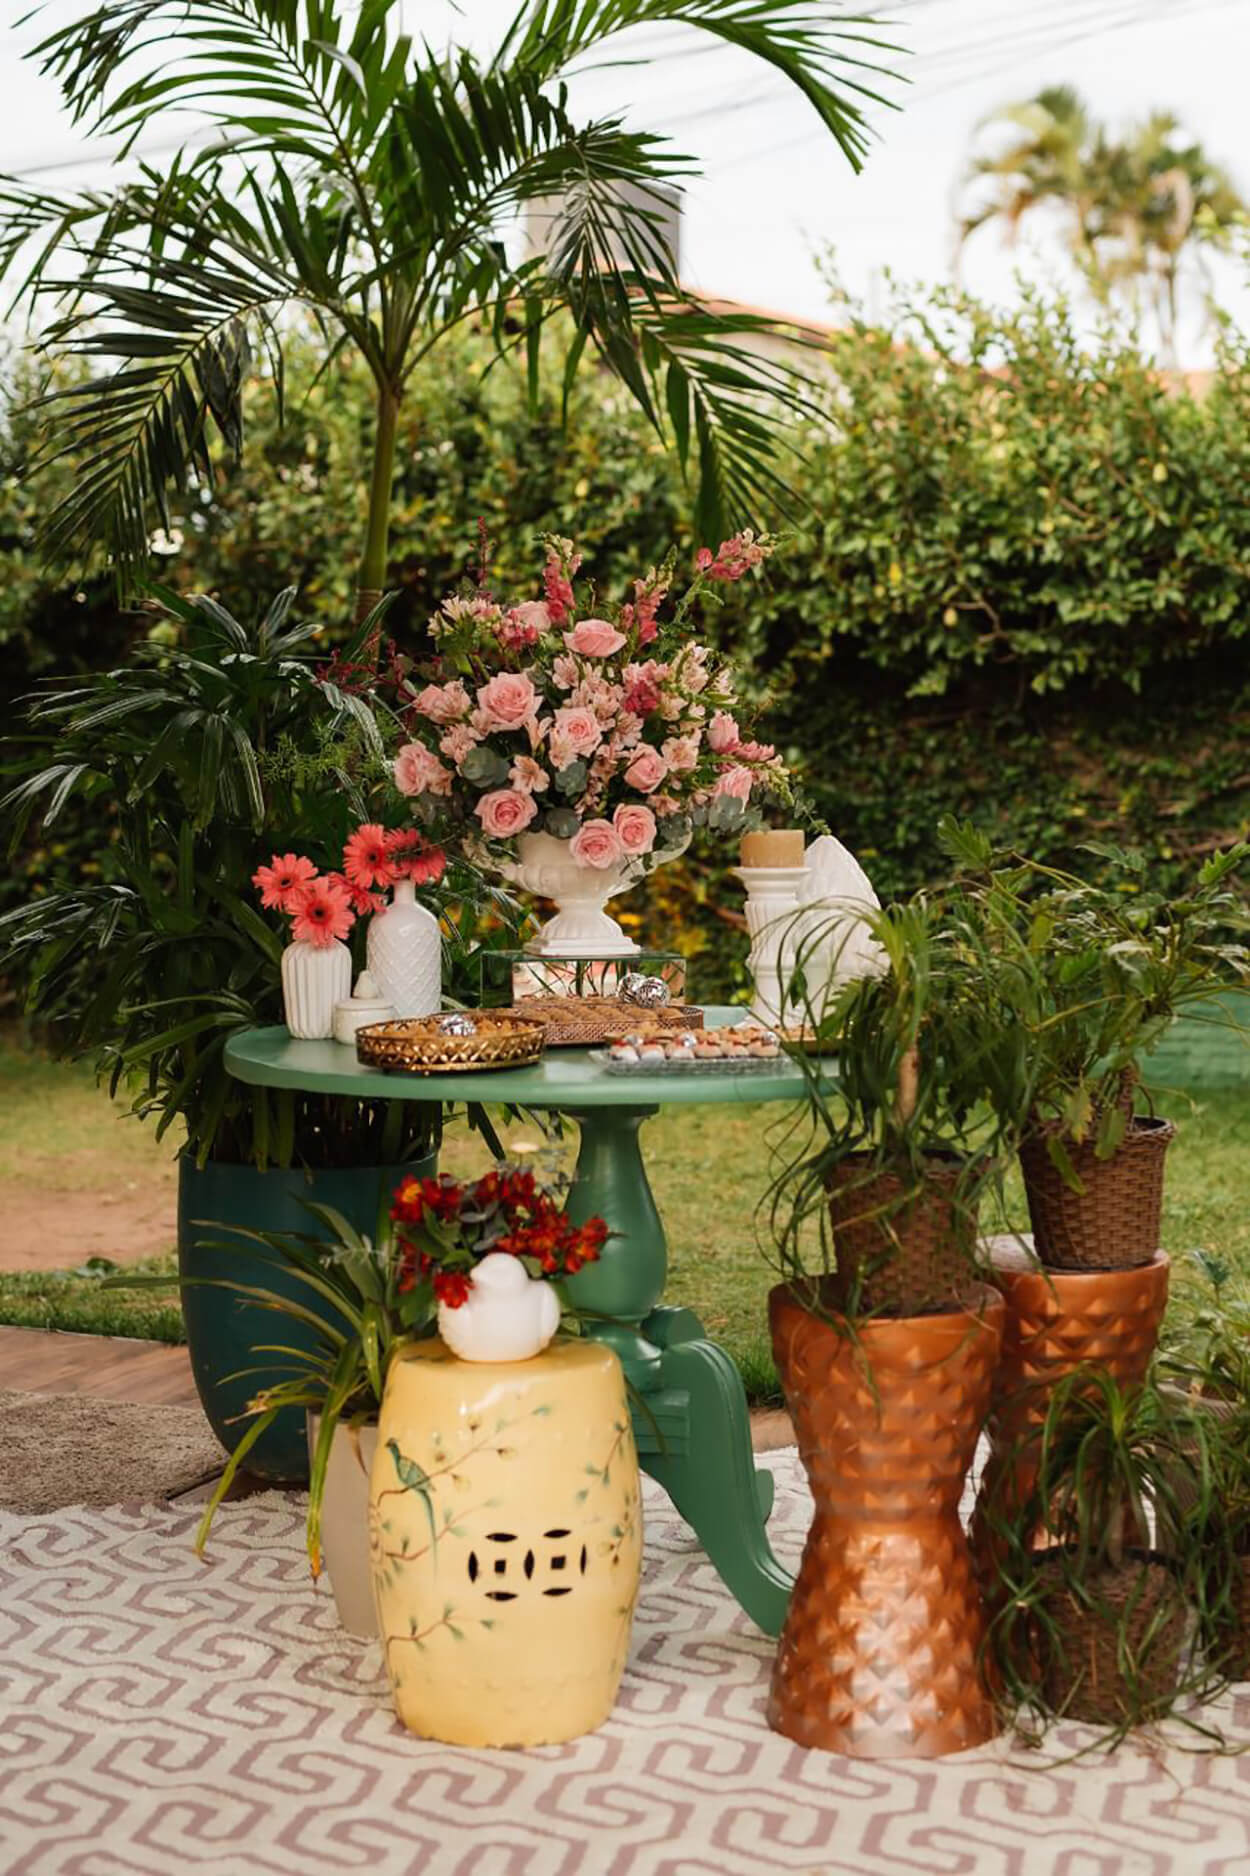 mesa verde com vasos cbranco com flores rosas